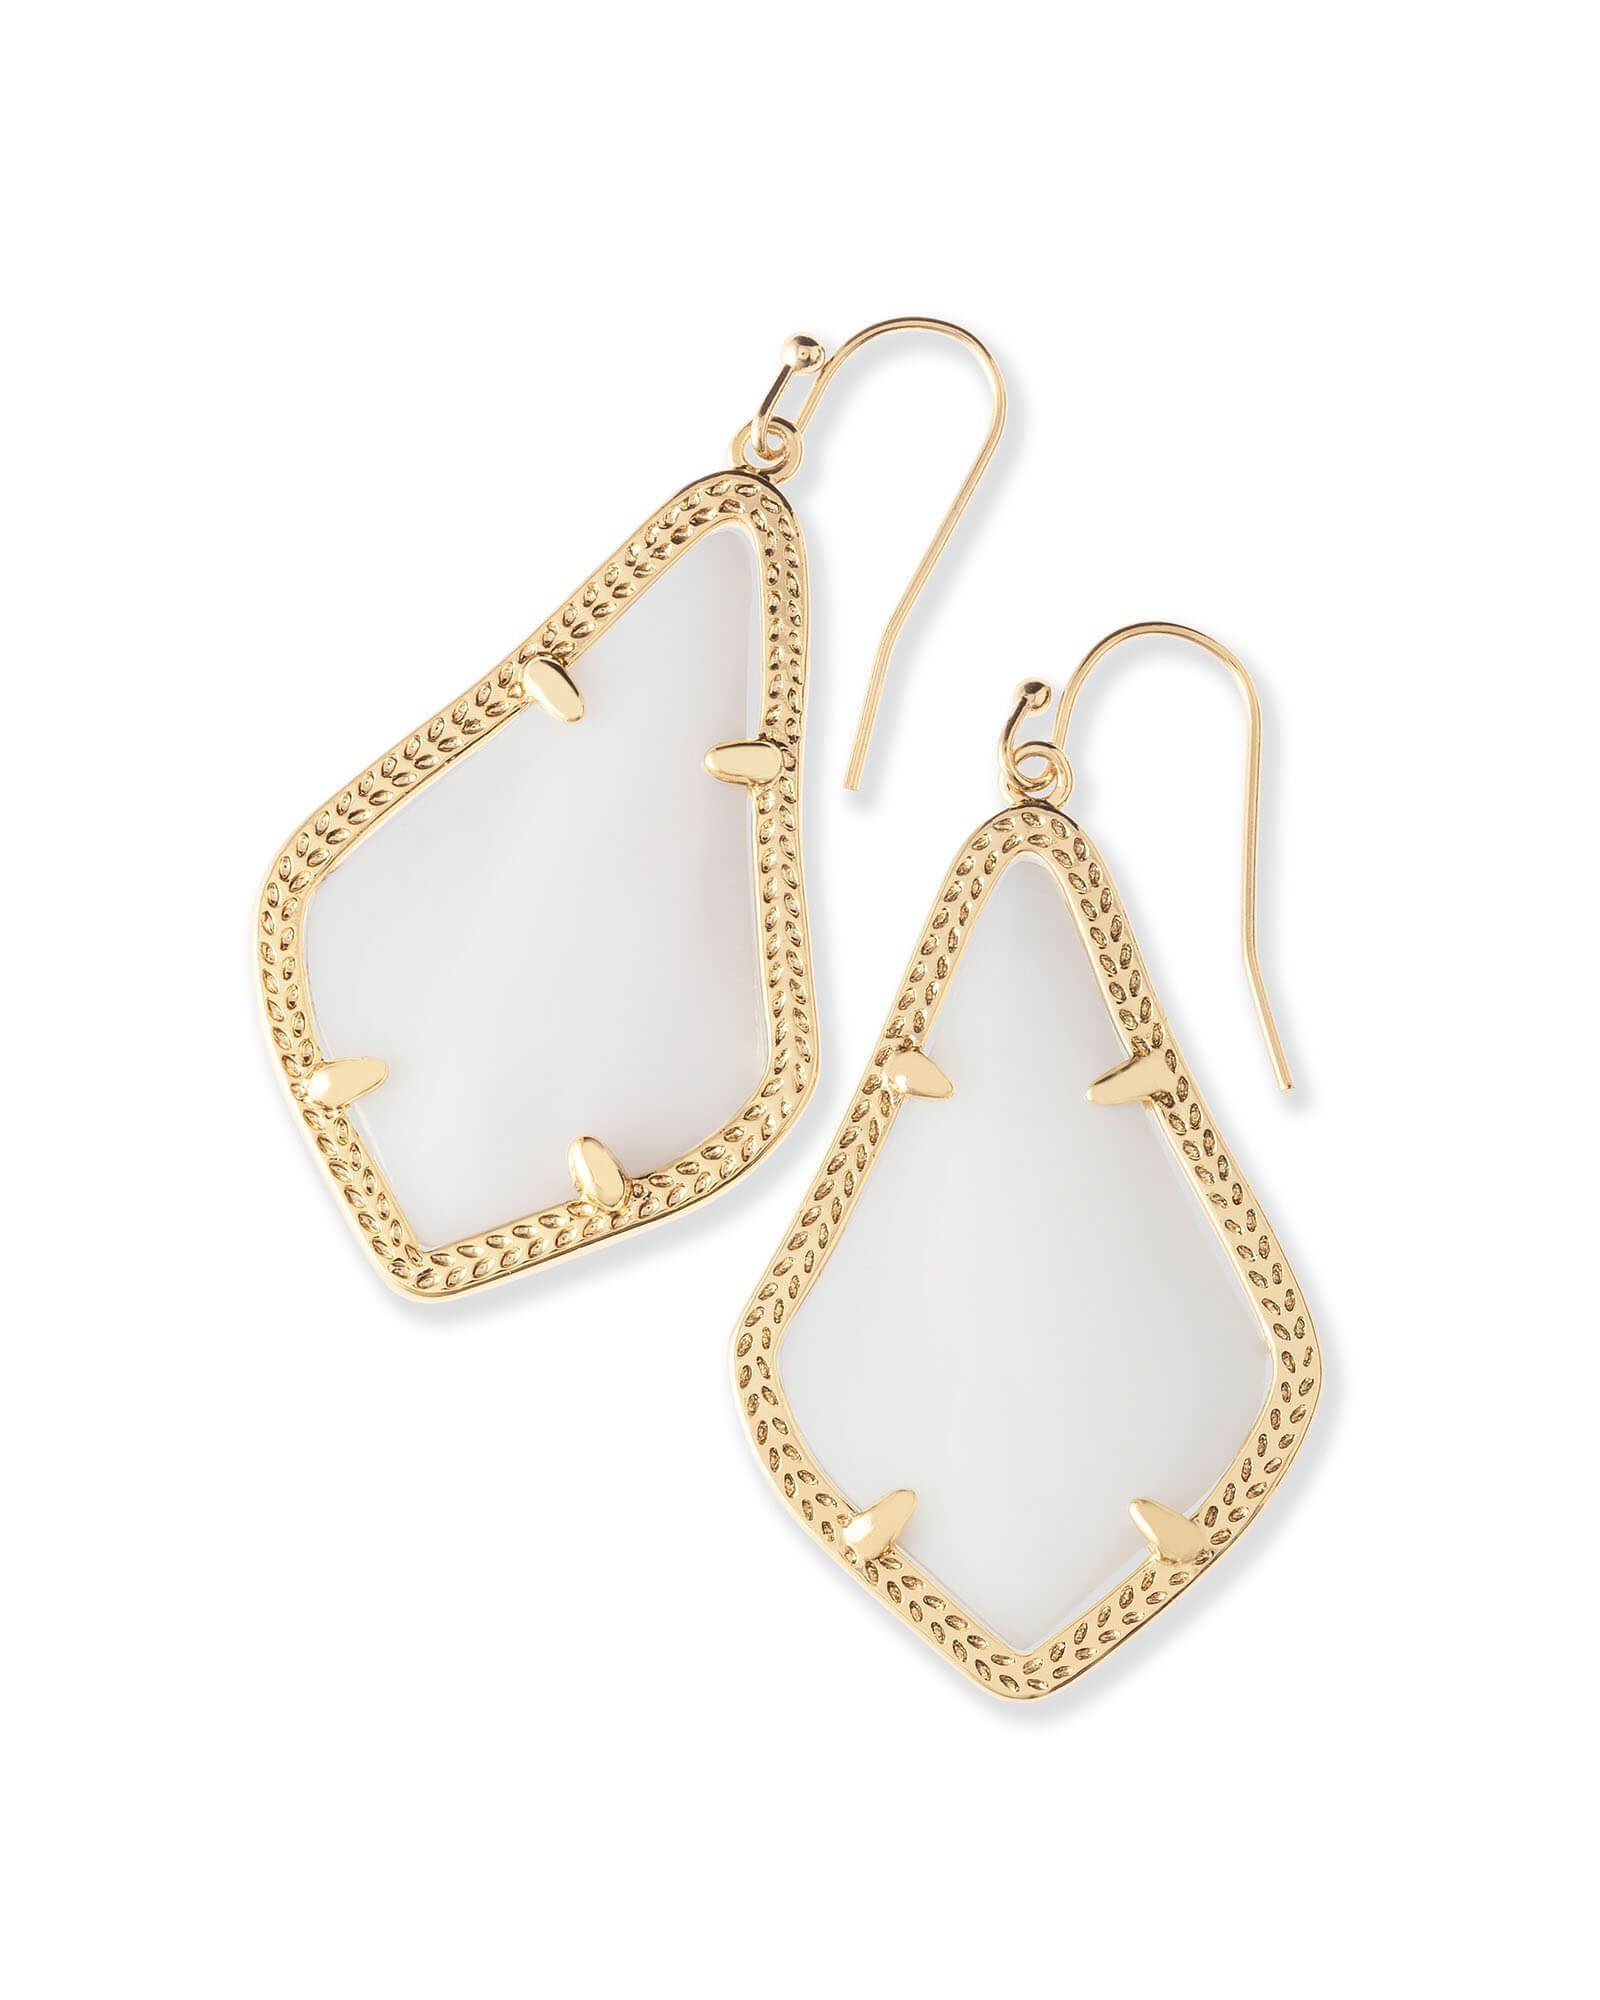 Alex Gold Drop Earrings in White Mother-of-Pearl | Kendra Scott